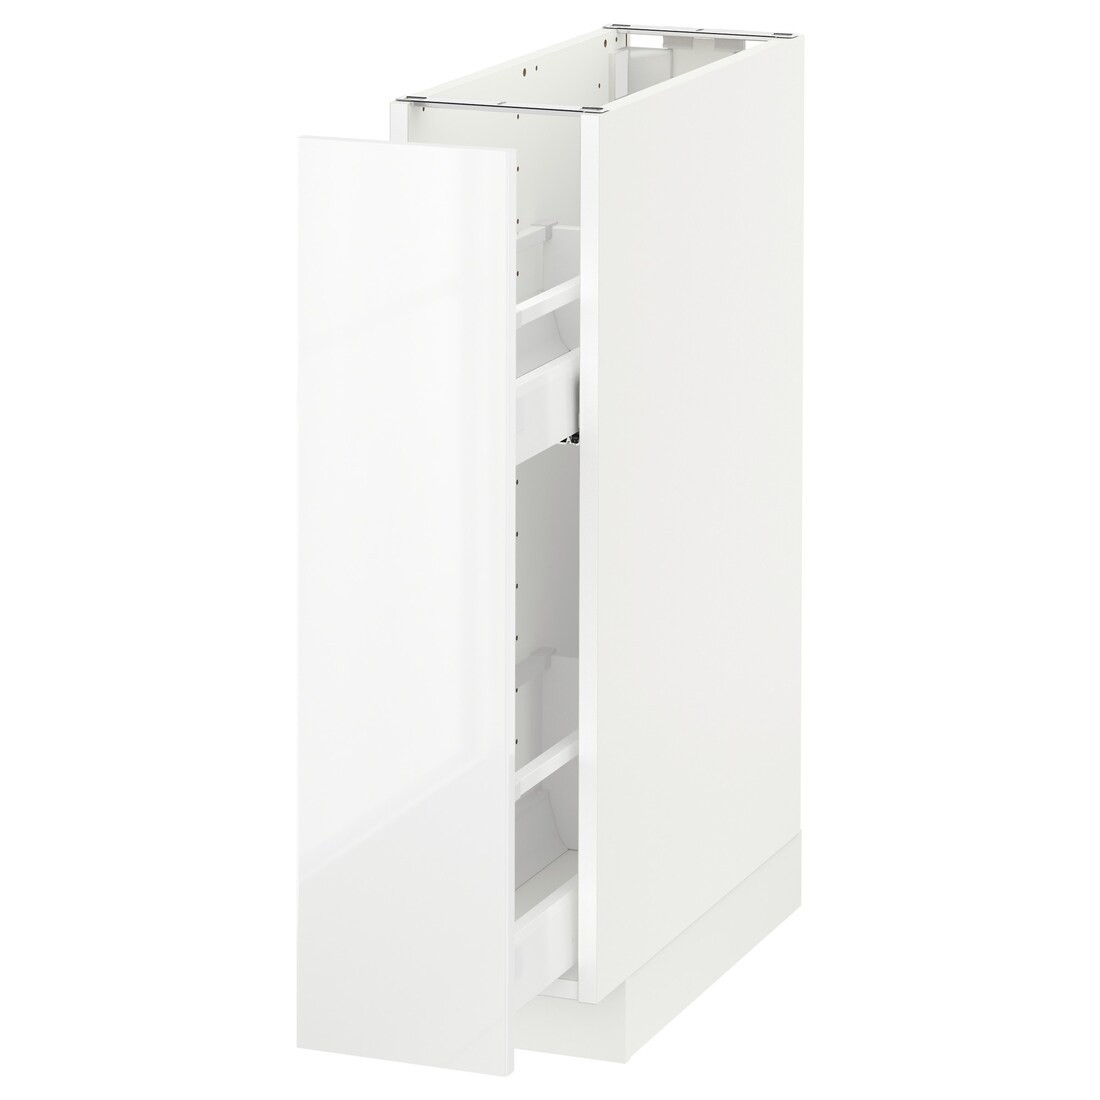 IKEA METOD МЕТОД Напольный шкаф / с выдвижным внутренним элементом, белый / Ringhult белый, 20x60 см 89164875 891.648.75